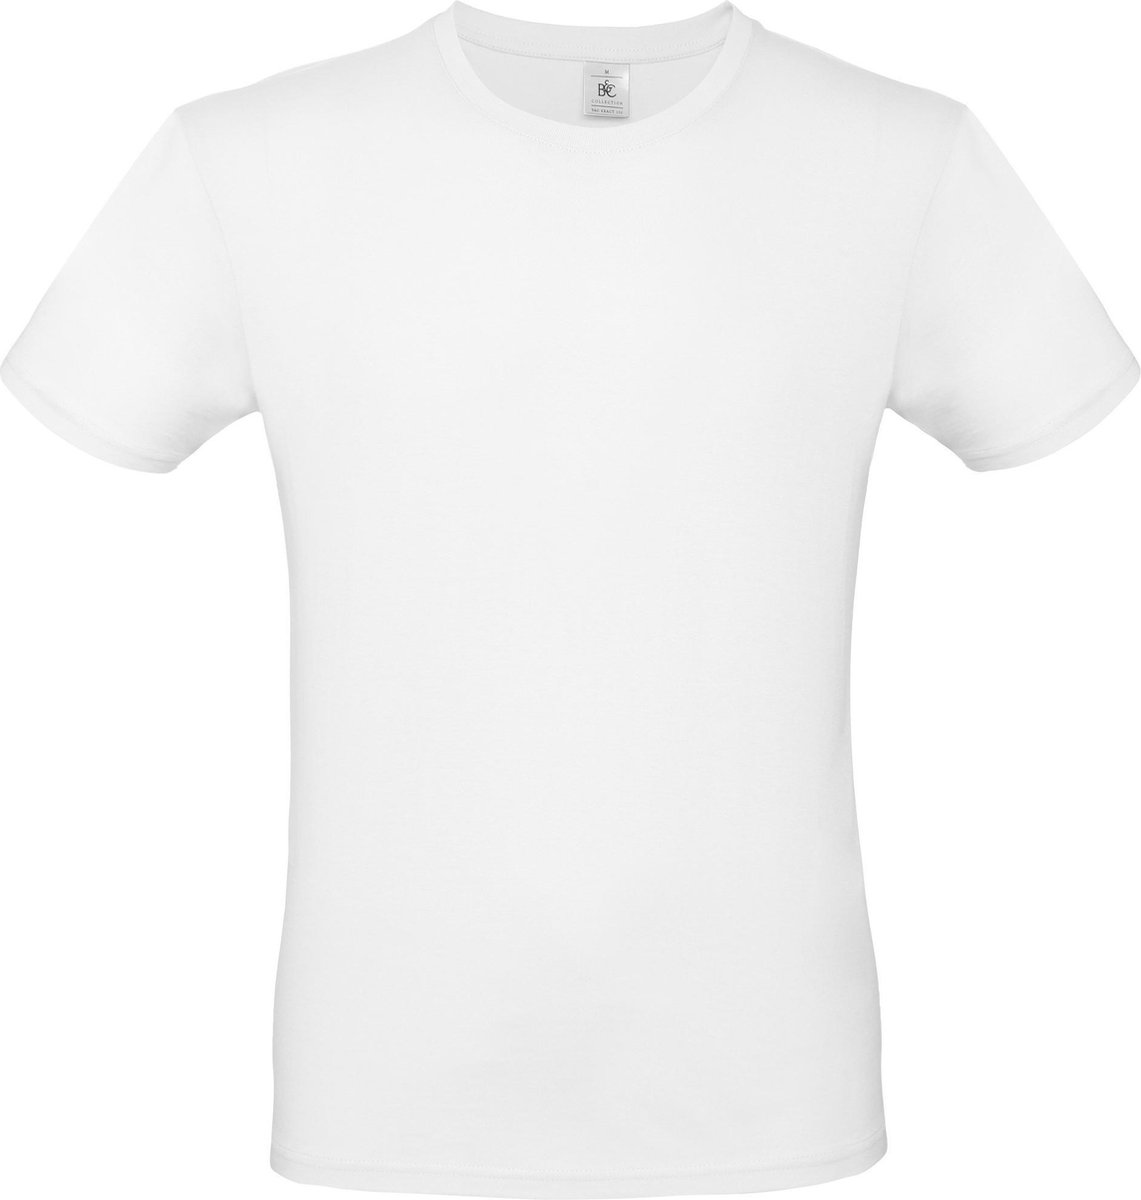 B&C #E150 Heren T-shirt Wit (onbedrukt - 5 stuks)